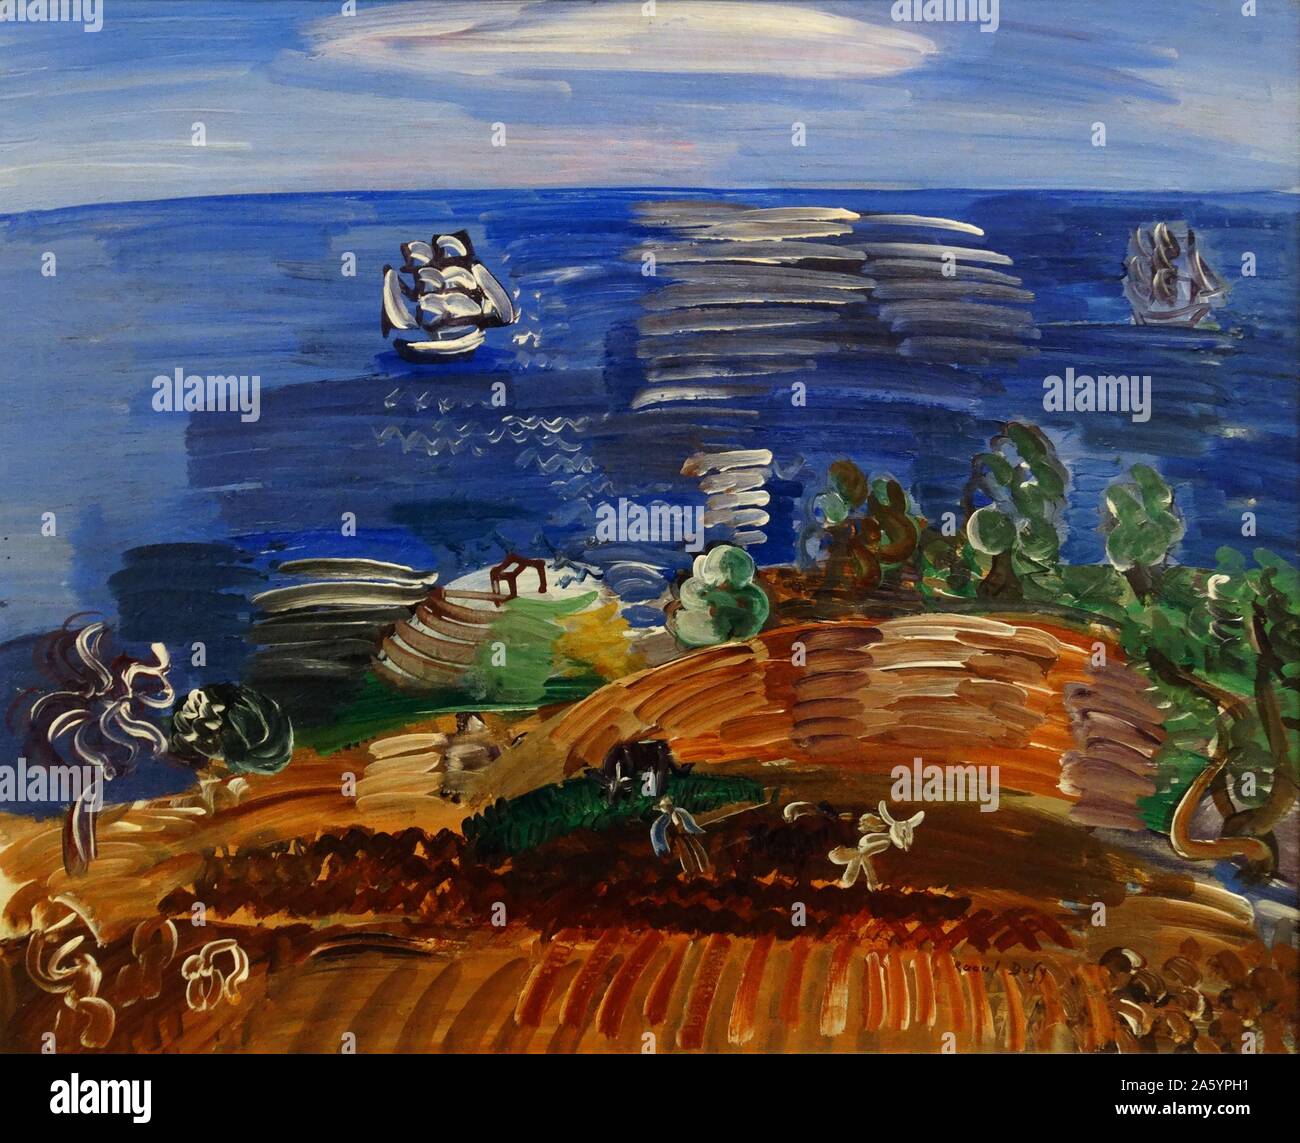 La Sicile aux labeurs de Raoul Dufy (1877-1953). Huile sur toile, 1923. Dufy était un peintre fauviste français qui a mis au point un style décoratif coloré, qui est rapidement devenue à la mode. Banque D'Images